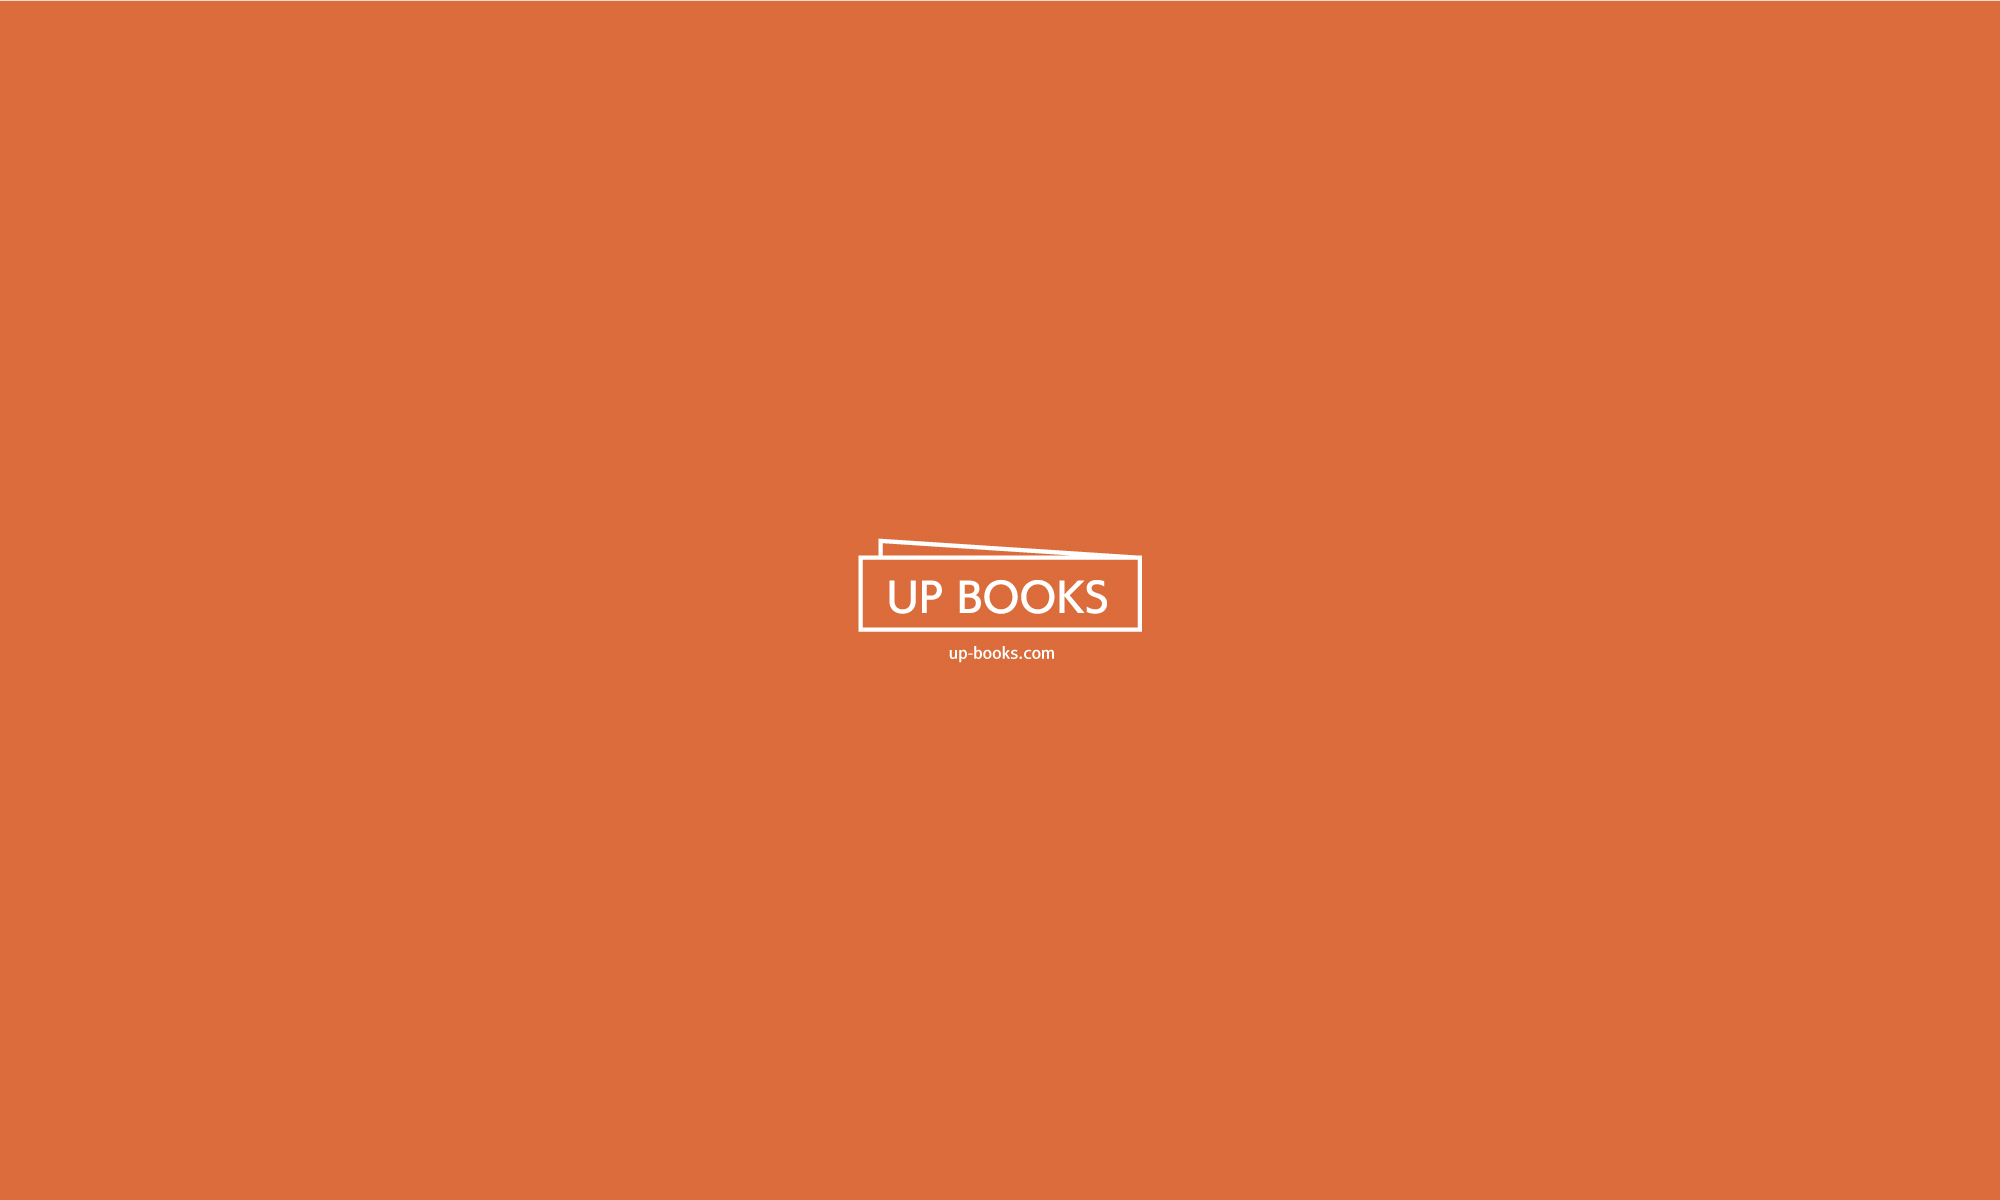 up-books.com